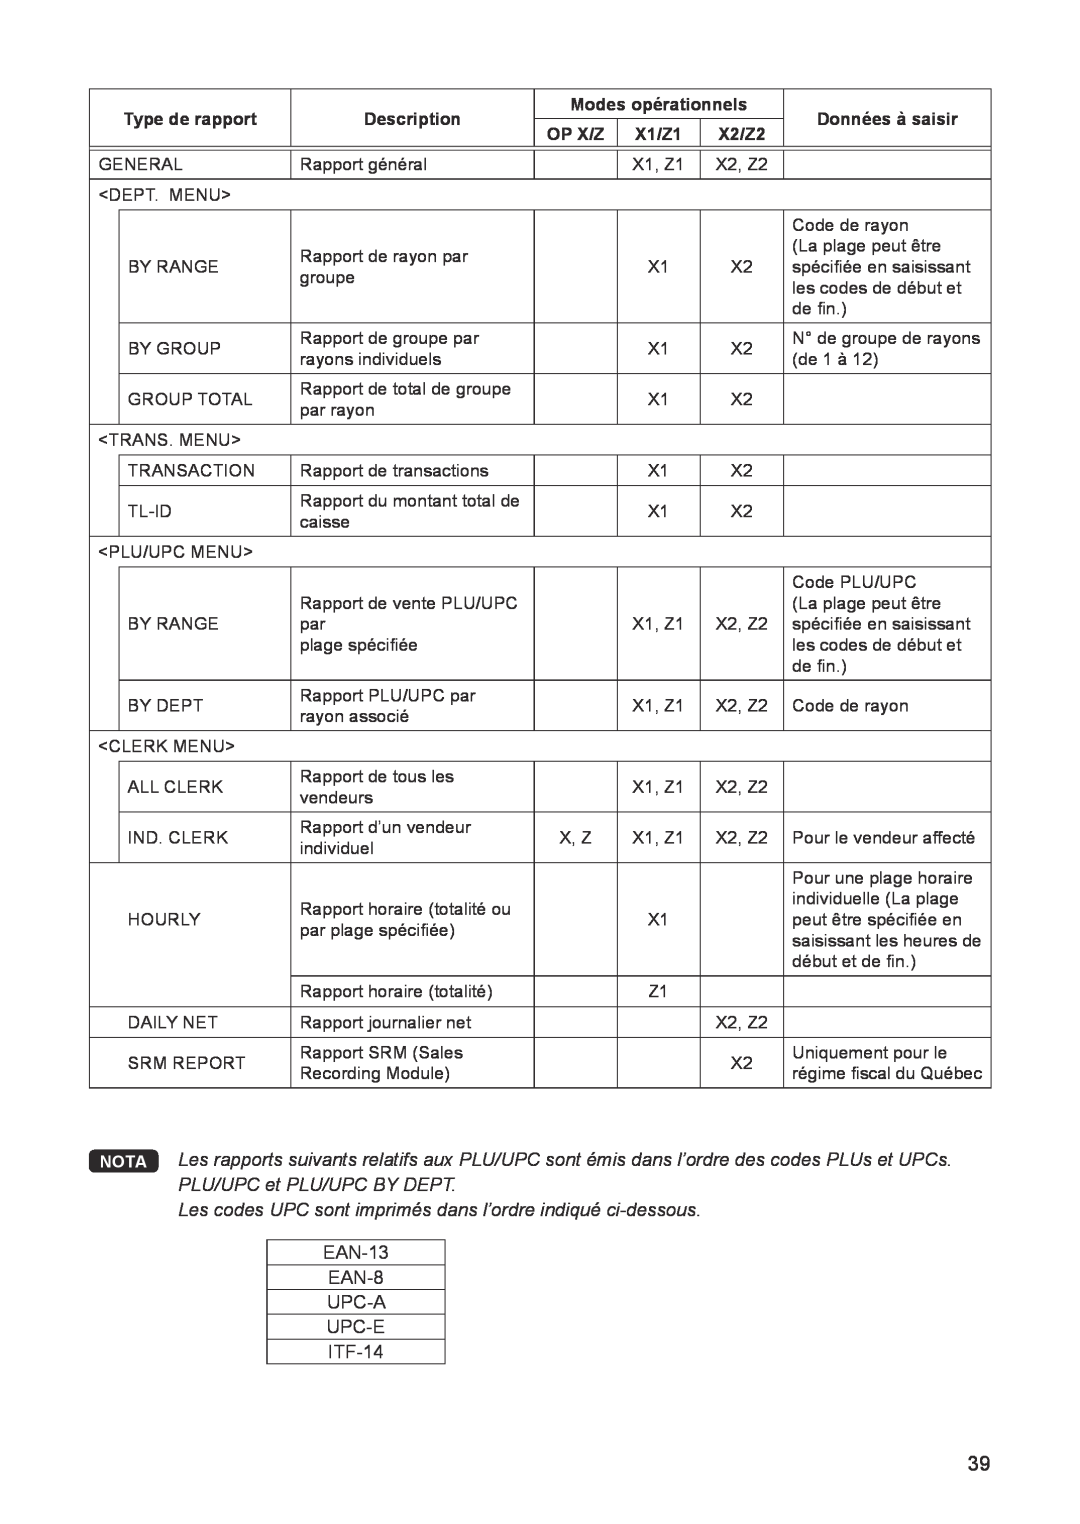 Sharp ER-A347 Les codes UPC sont imprimés dans l’ordre indiqué ci-dessous, Type de rapport, Description, Données à saisir 